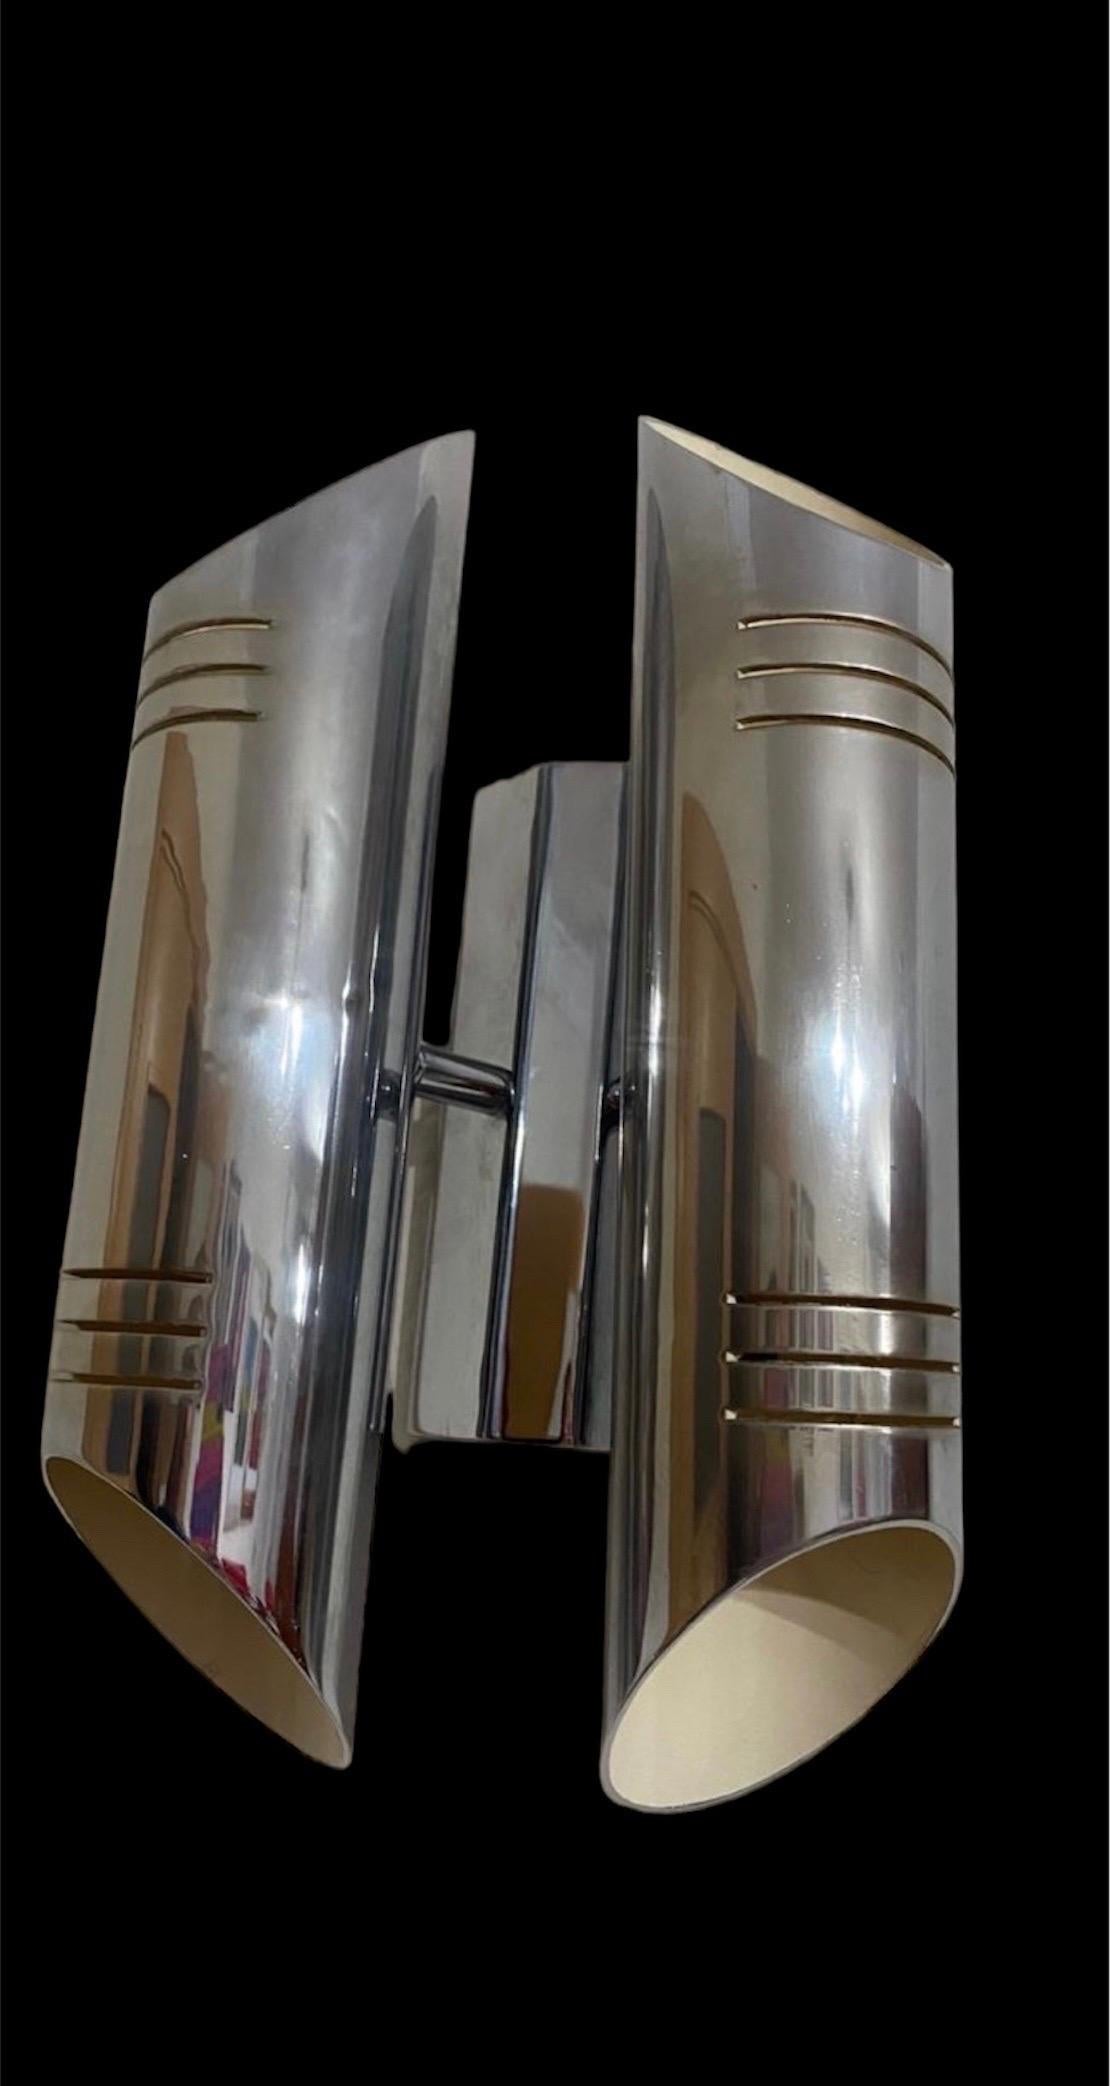 Superbe Paar röhrenförmige Wandlampe Space Age produziert  in den 70er Jahren.

Struktur aus verchromtem Metall.

Einzigartiges Objekt, das wunderbar leuchtet und Ihrer Einrichtung einen echten Design-Touch verleiht.

Geprüfte Elektrizität,